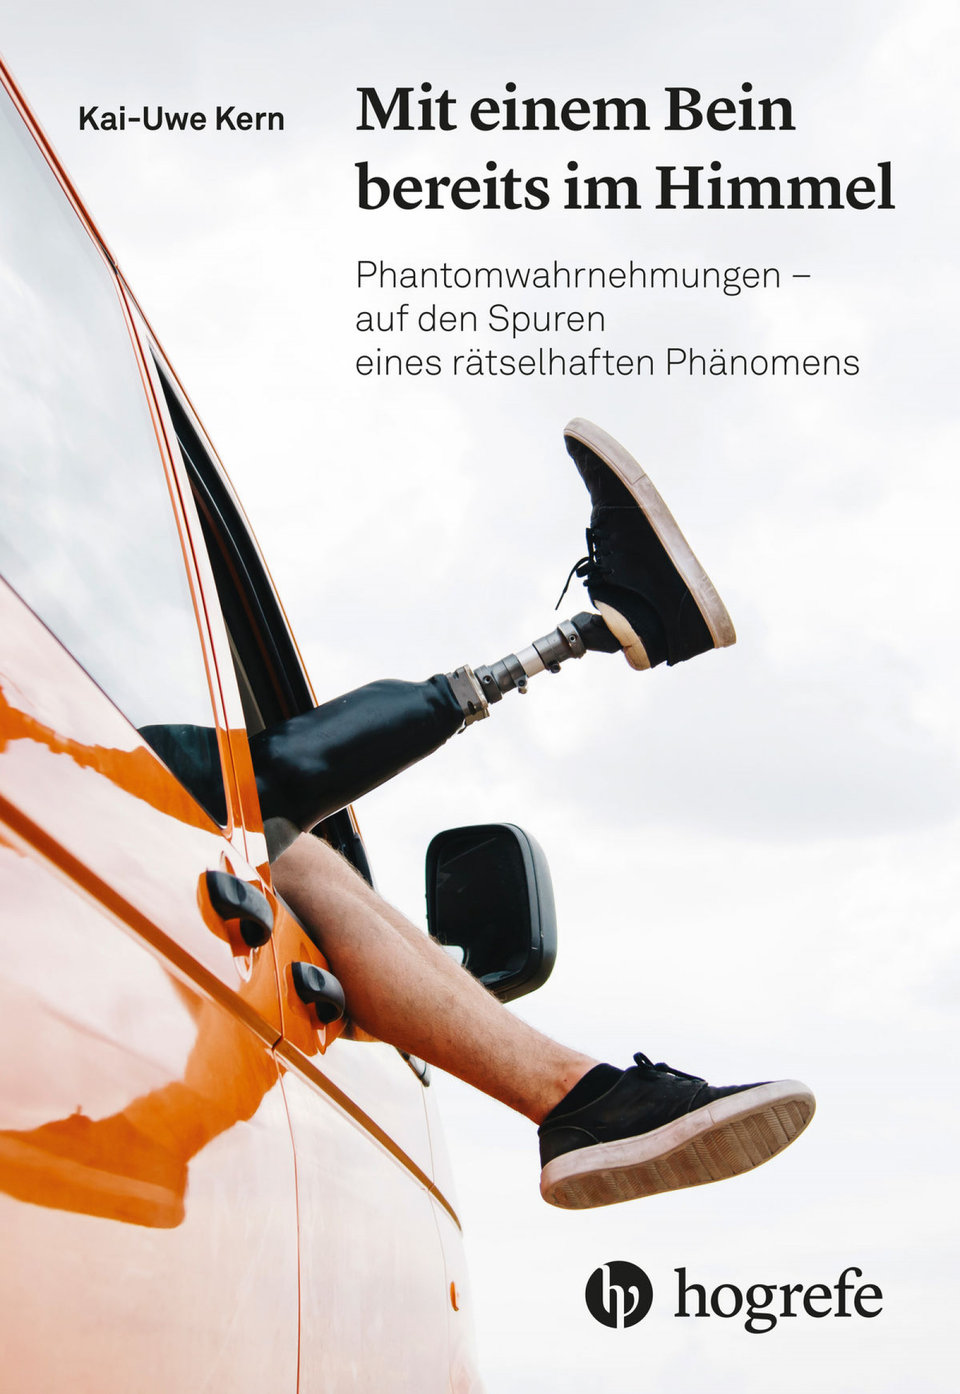 Kai-Uwe Kern: Mit einem Bein bereits im Himmel. Phantomwahrnehmungen – auf den Spuren eines rätselhaften Phänomens. Hogrefe Verlag, ISBN-13: 978-3456860138, Euro 24,95